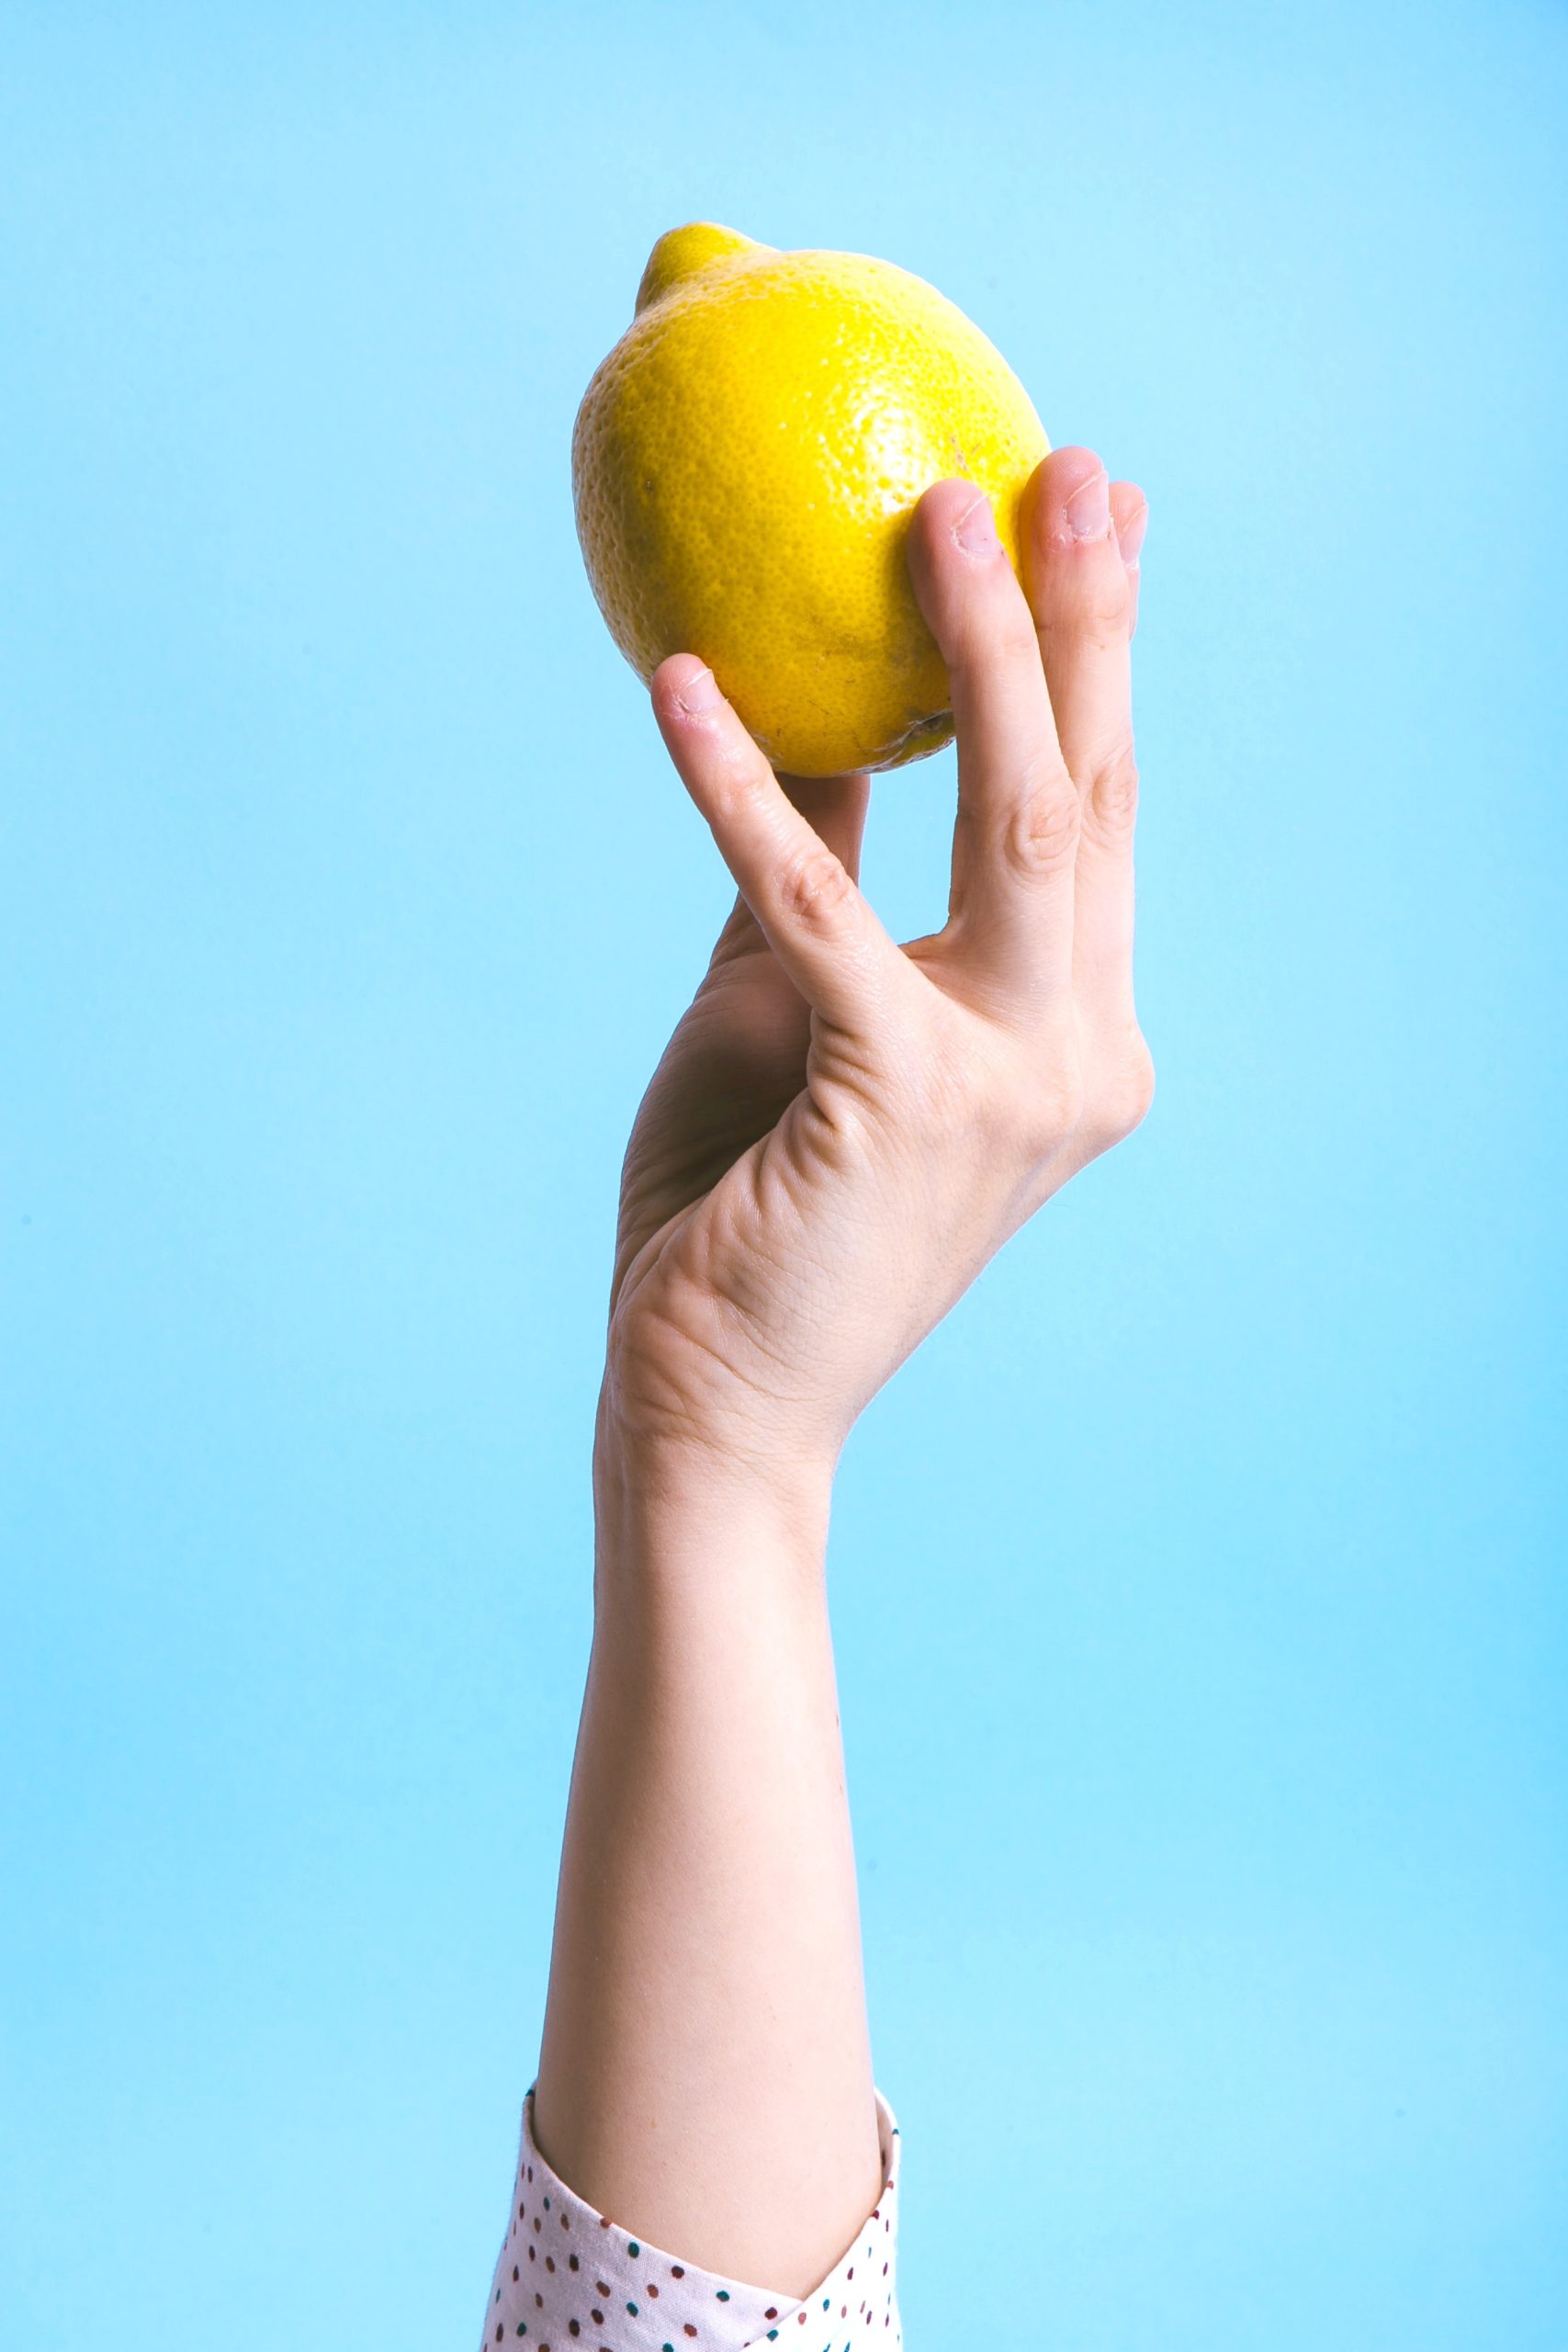 <img src="lemon.jpg" alt="arm holding up lemon"/> 